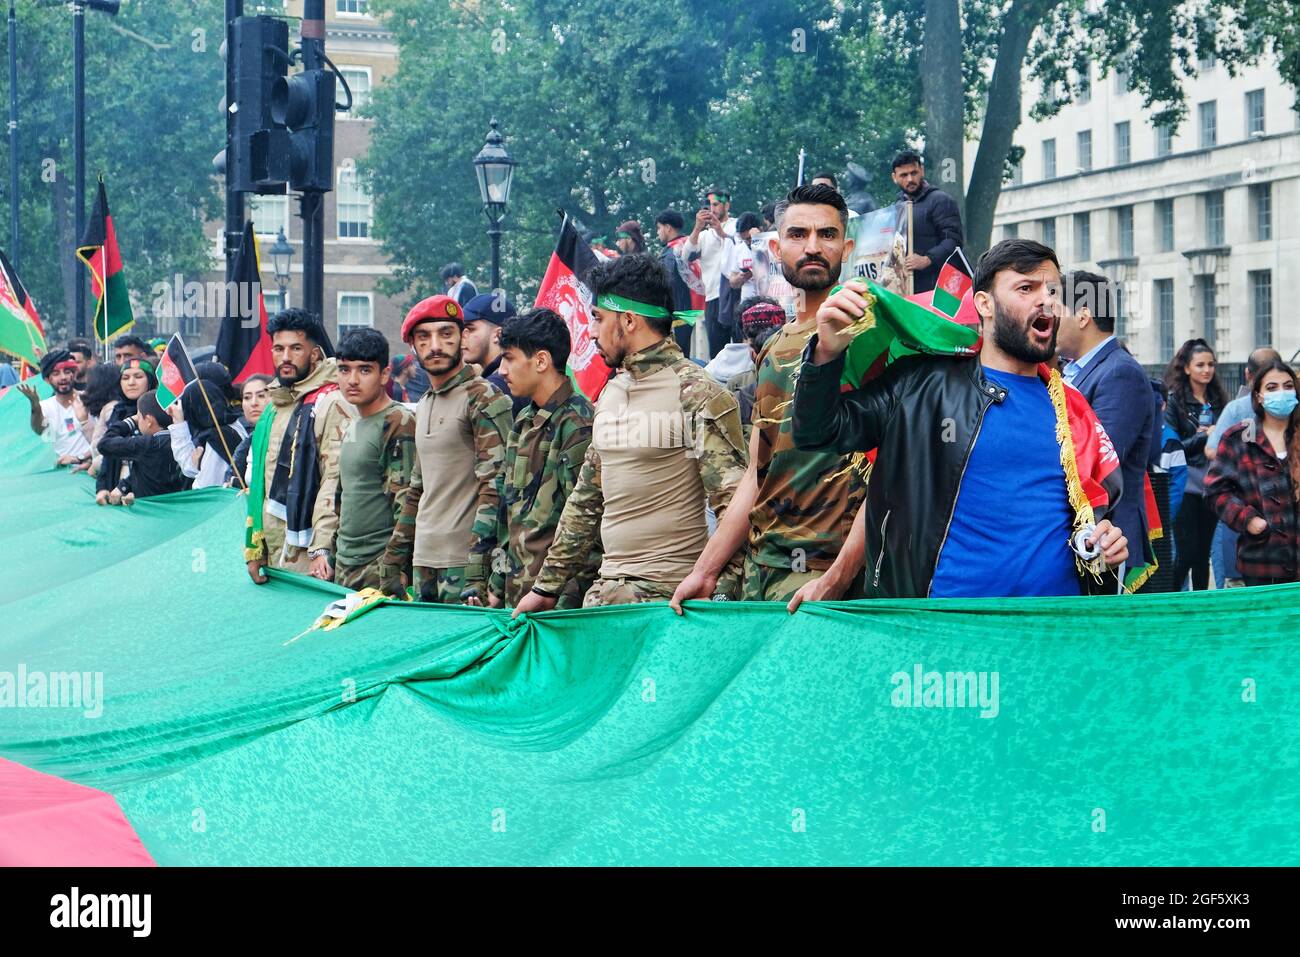 Londres, Royaume-Uni. Les manifestants défilent dans le centre de Londres pour manifester leur solidarité avec les Afghans après la prise de pouvoir du pays par les talibans. Banque D'Images